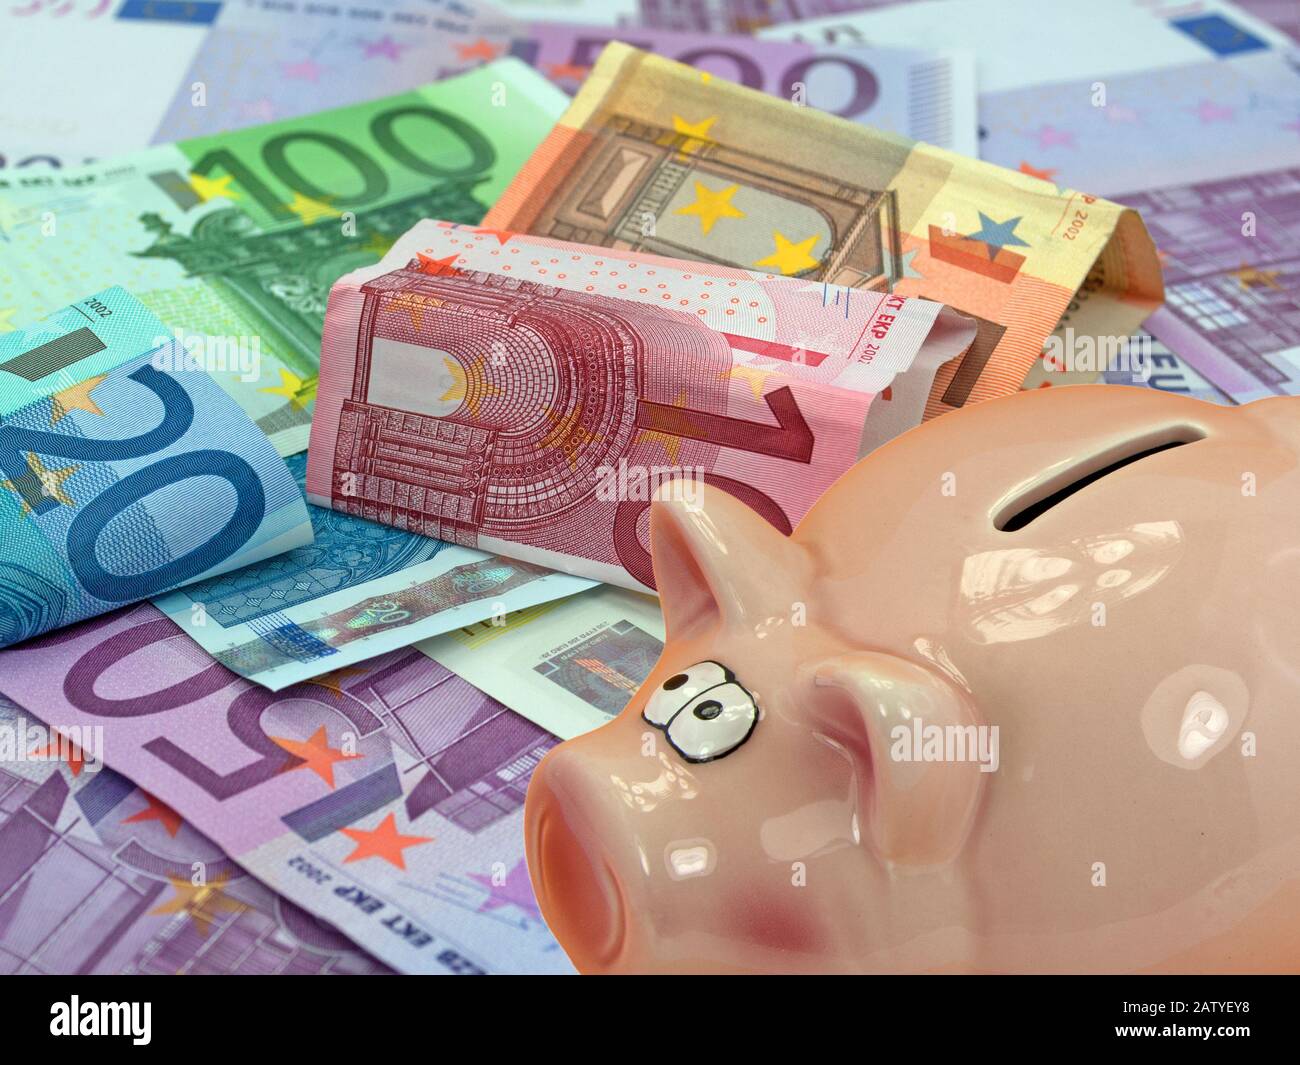 Hucha Para El Dinero Con La Imagen De Billetes De Banco Euro, Foto de  archivo - Imagen de reparto, préstamo: 82171944